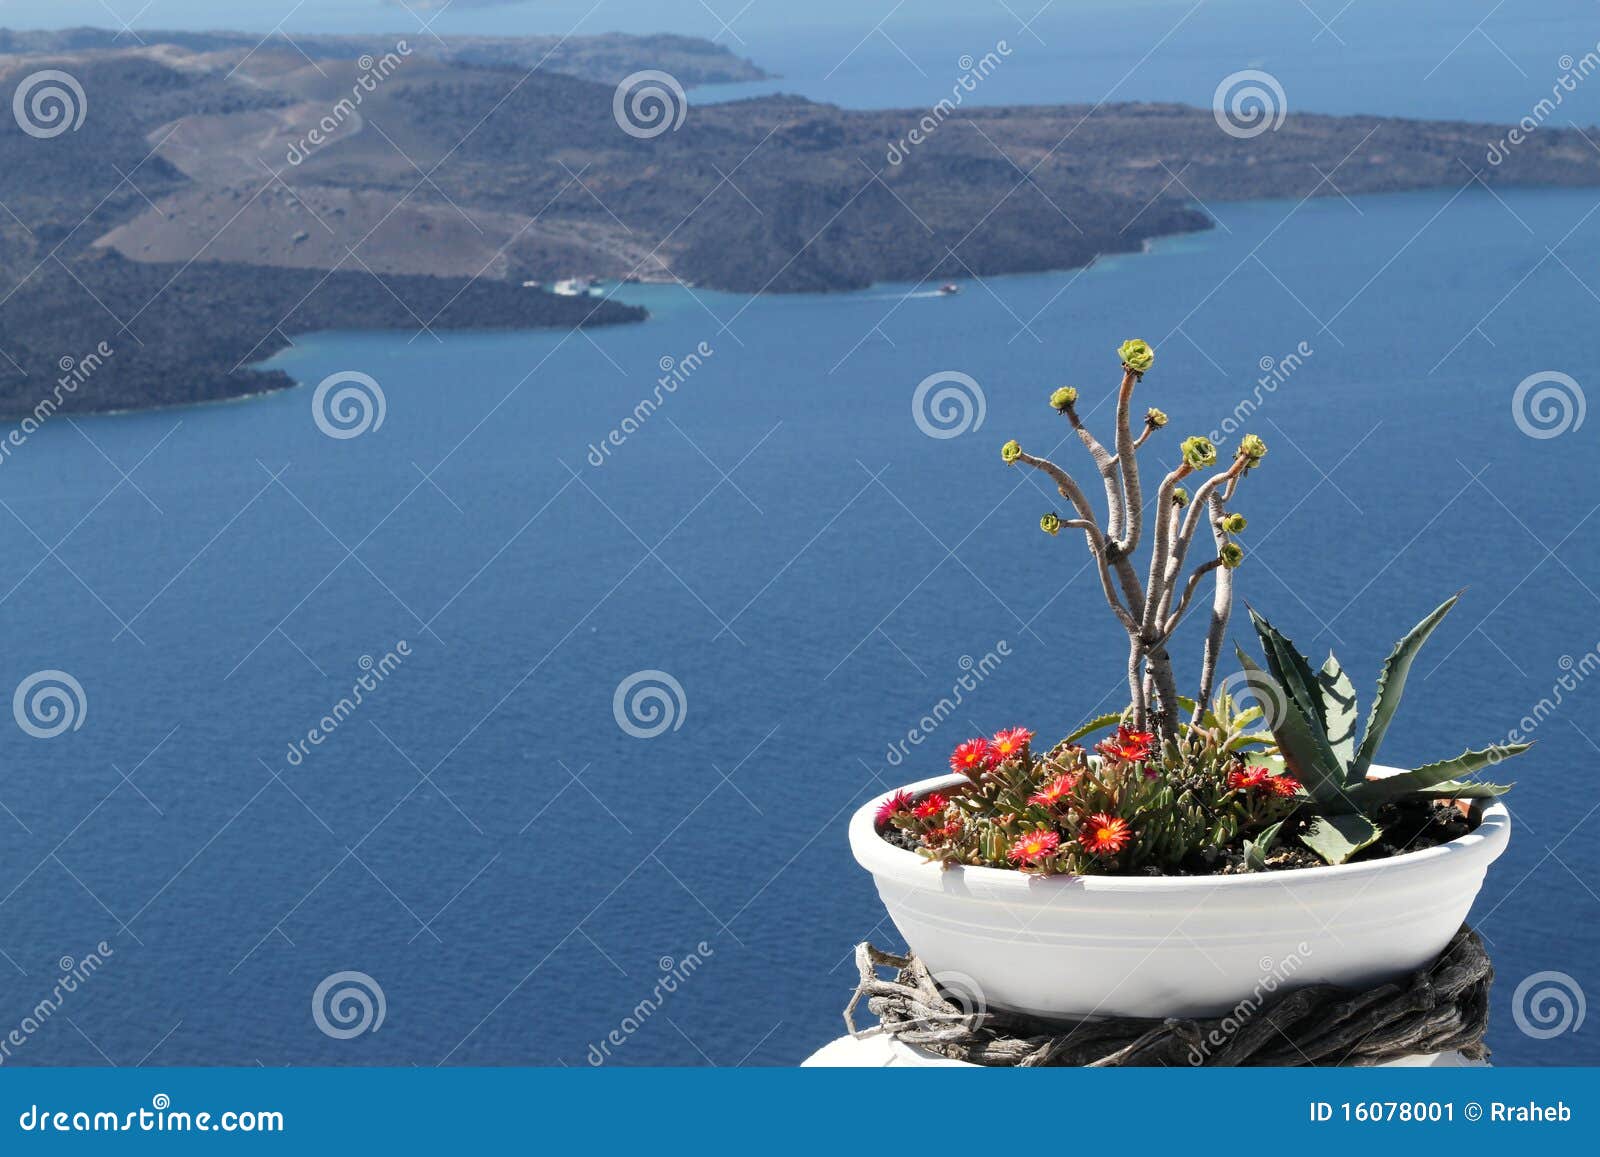 greek islands - caldera view santorini